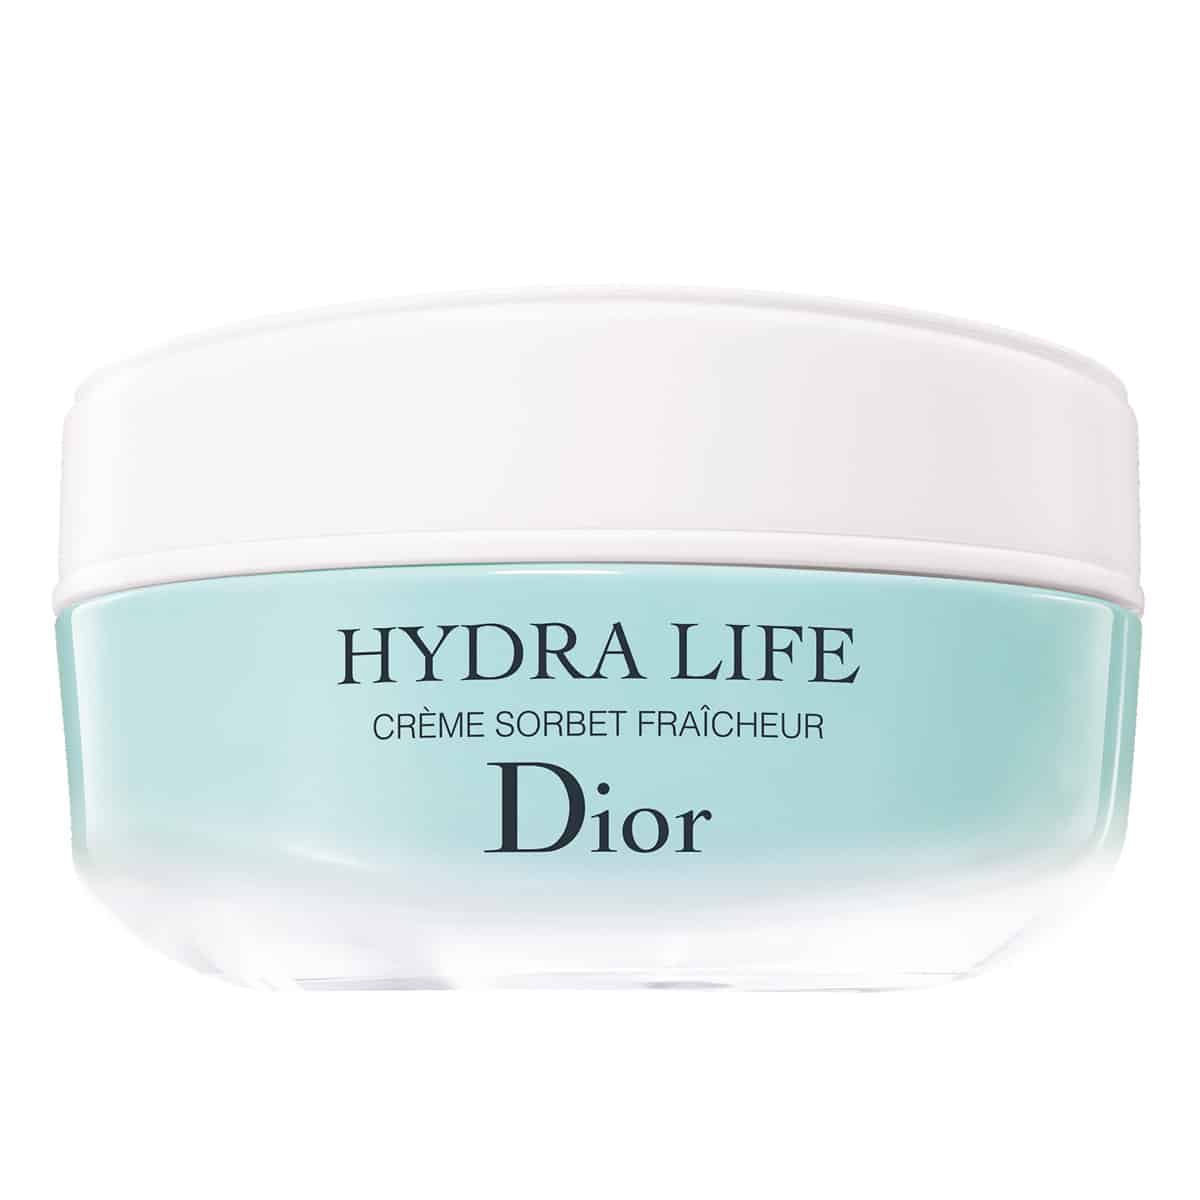 Hydra Life crème sorbet fraîcheur de Dior